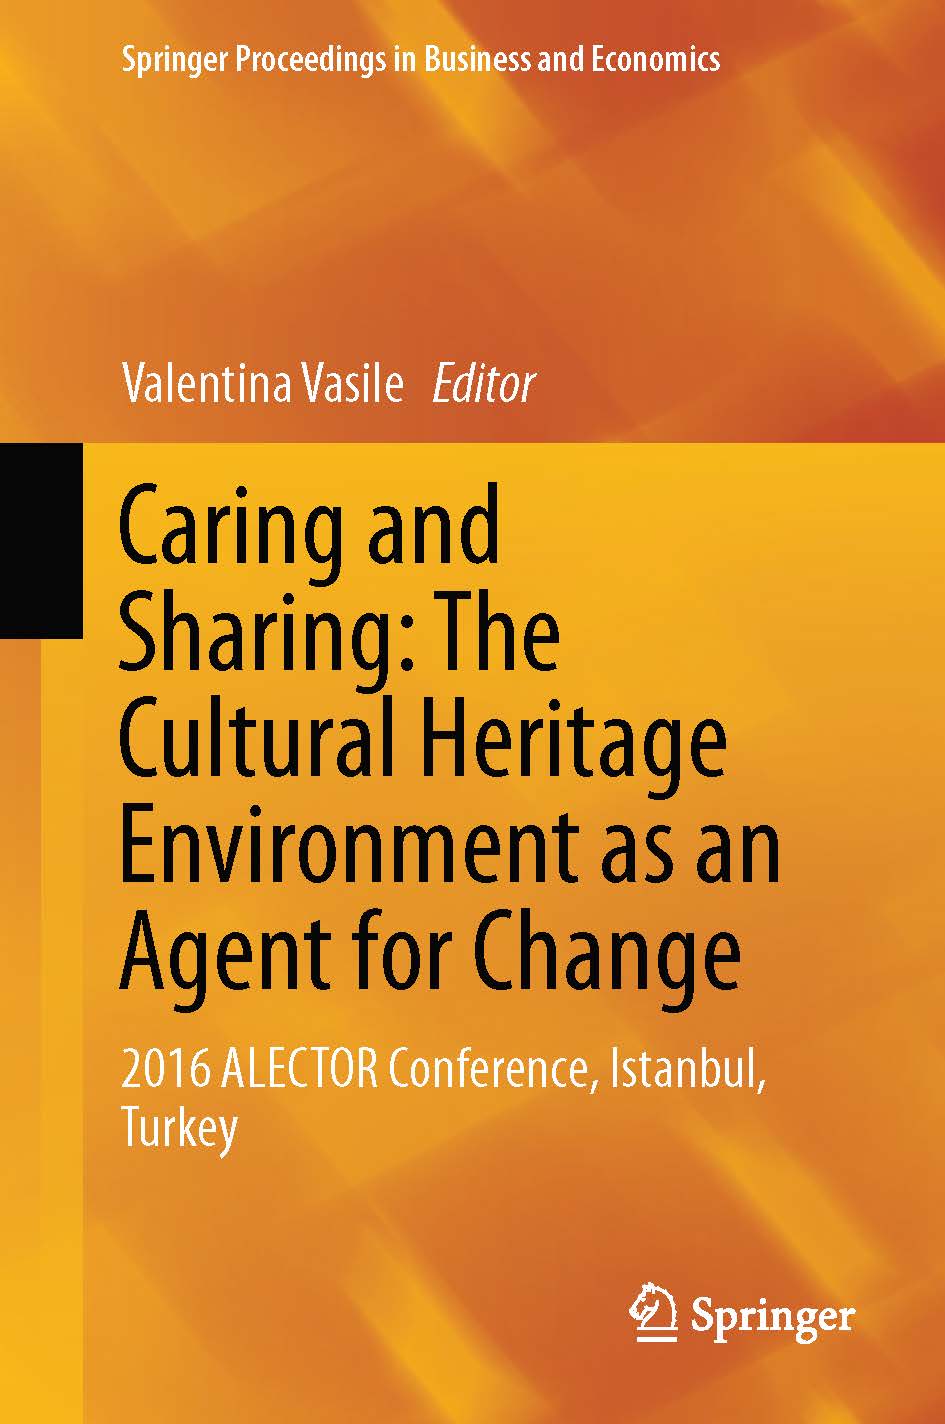 页面提取自－2019_Book_Caring and Sharing The Cultural Heritage Environment as an Agent for Change.jpg